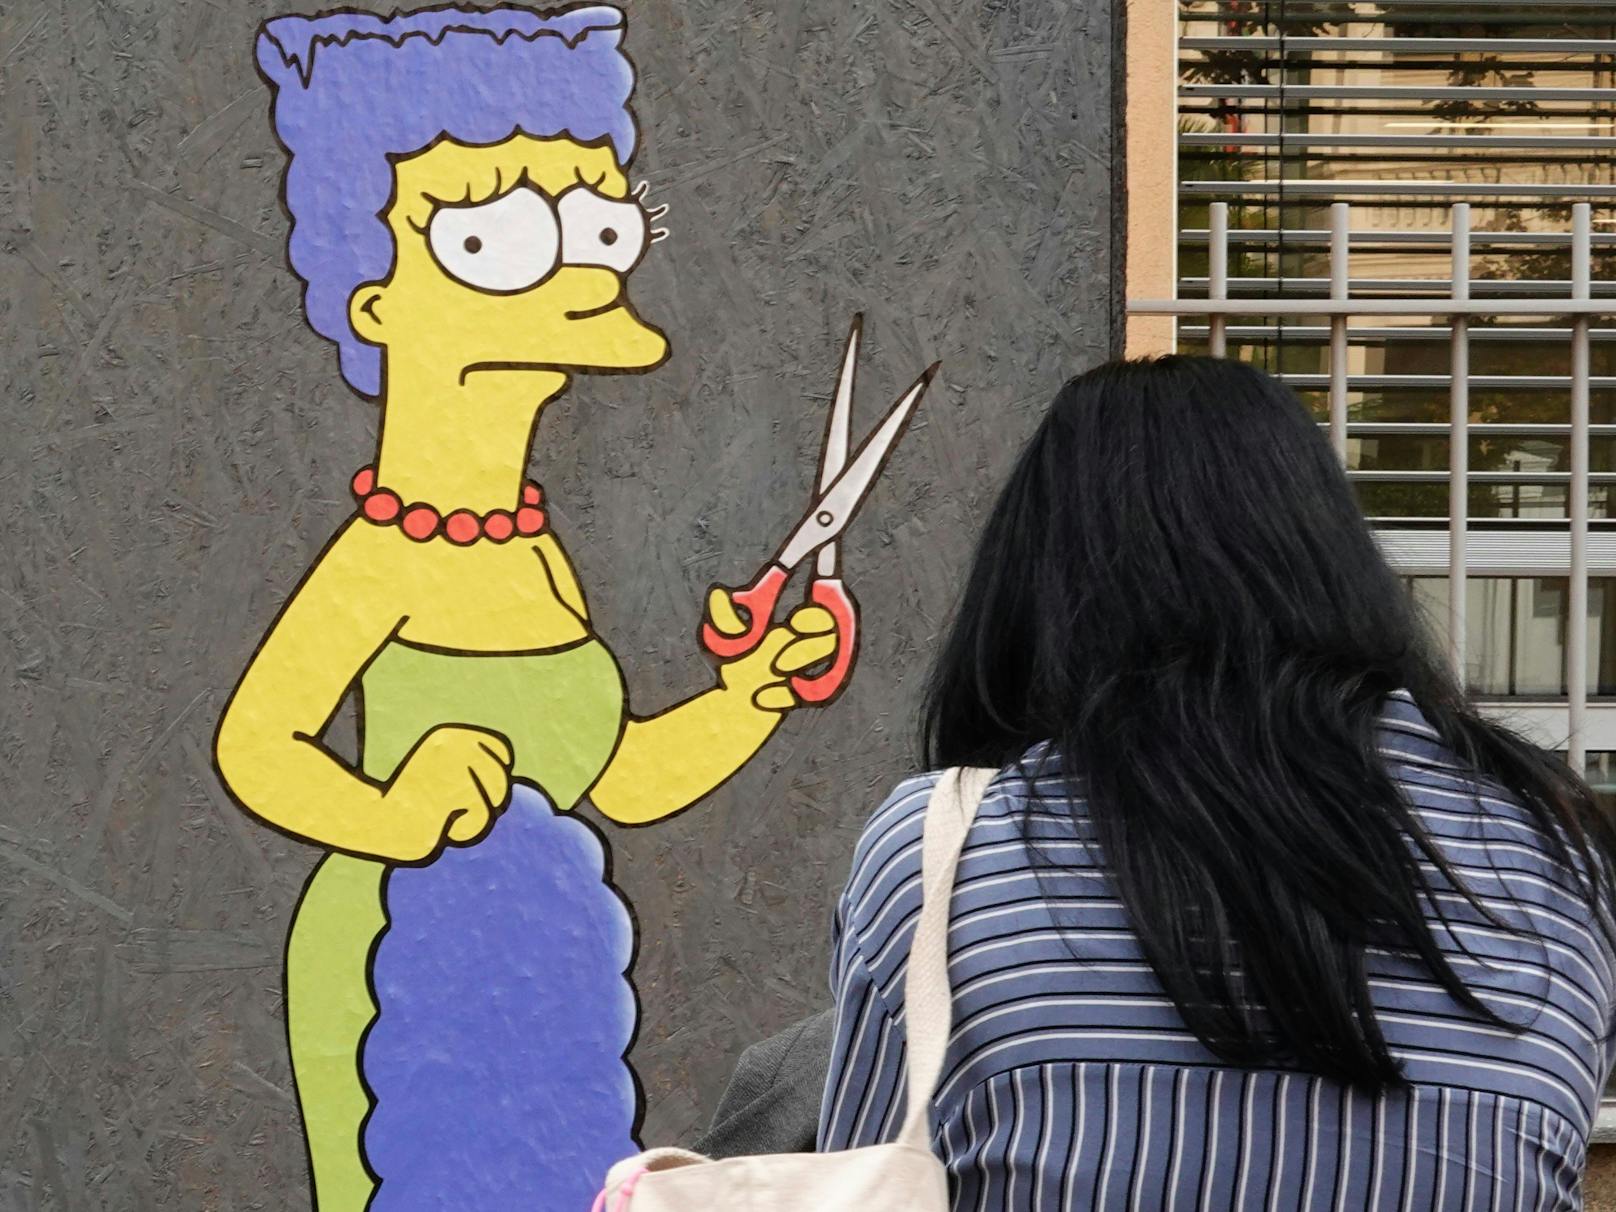 Der Straßenkünstler Alexsandro Palombo zeichnete vor dem iranischen Konsulat in Mailand die Comicfigur Marge Simpson, die sich aus Protest und Solidarität mit dem Schicksal von Mahsa Amini die Haare abgeschnitten hat.